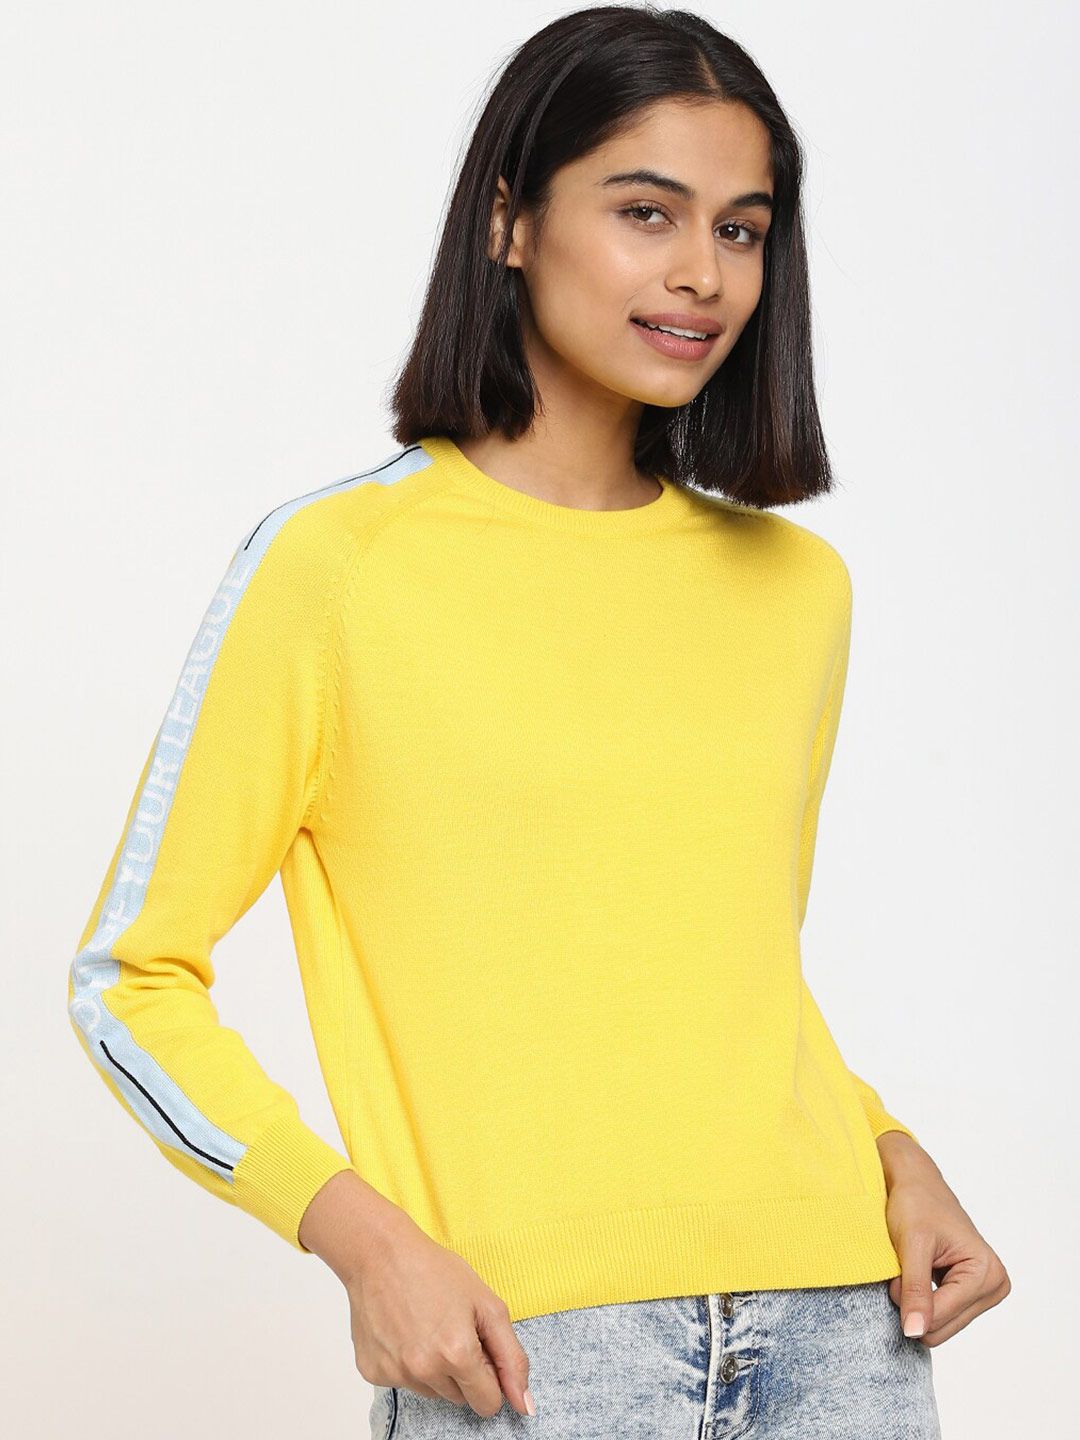 Bewakoof Women Yellow Pullover Price in India